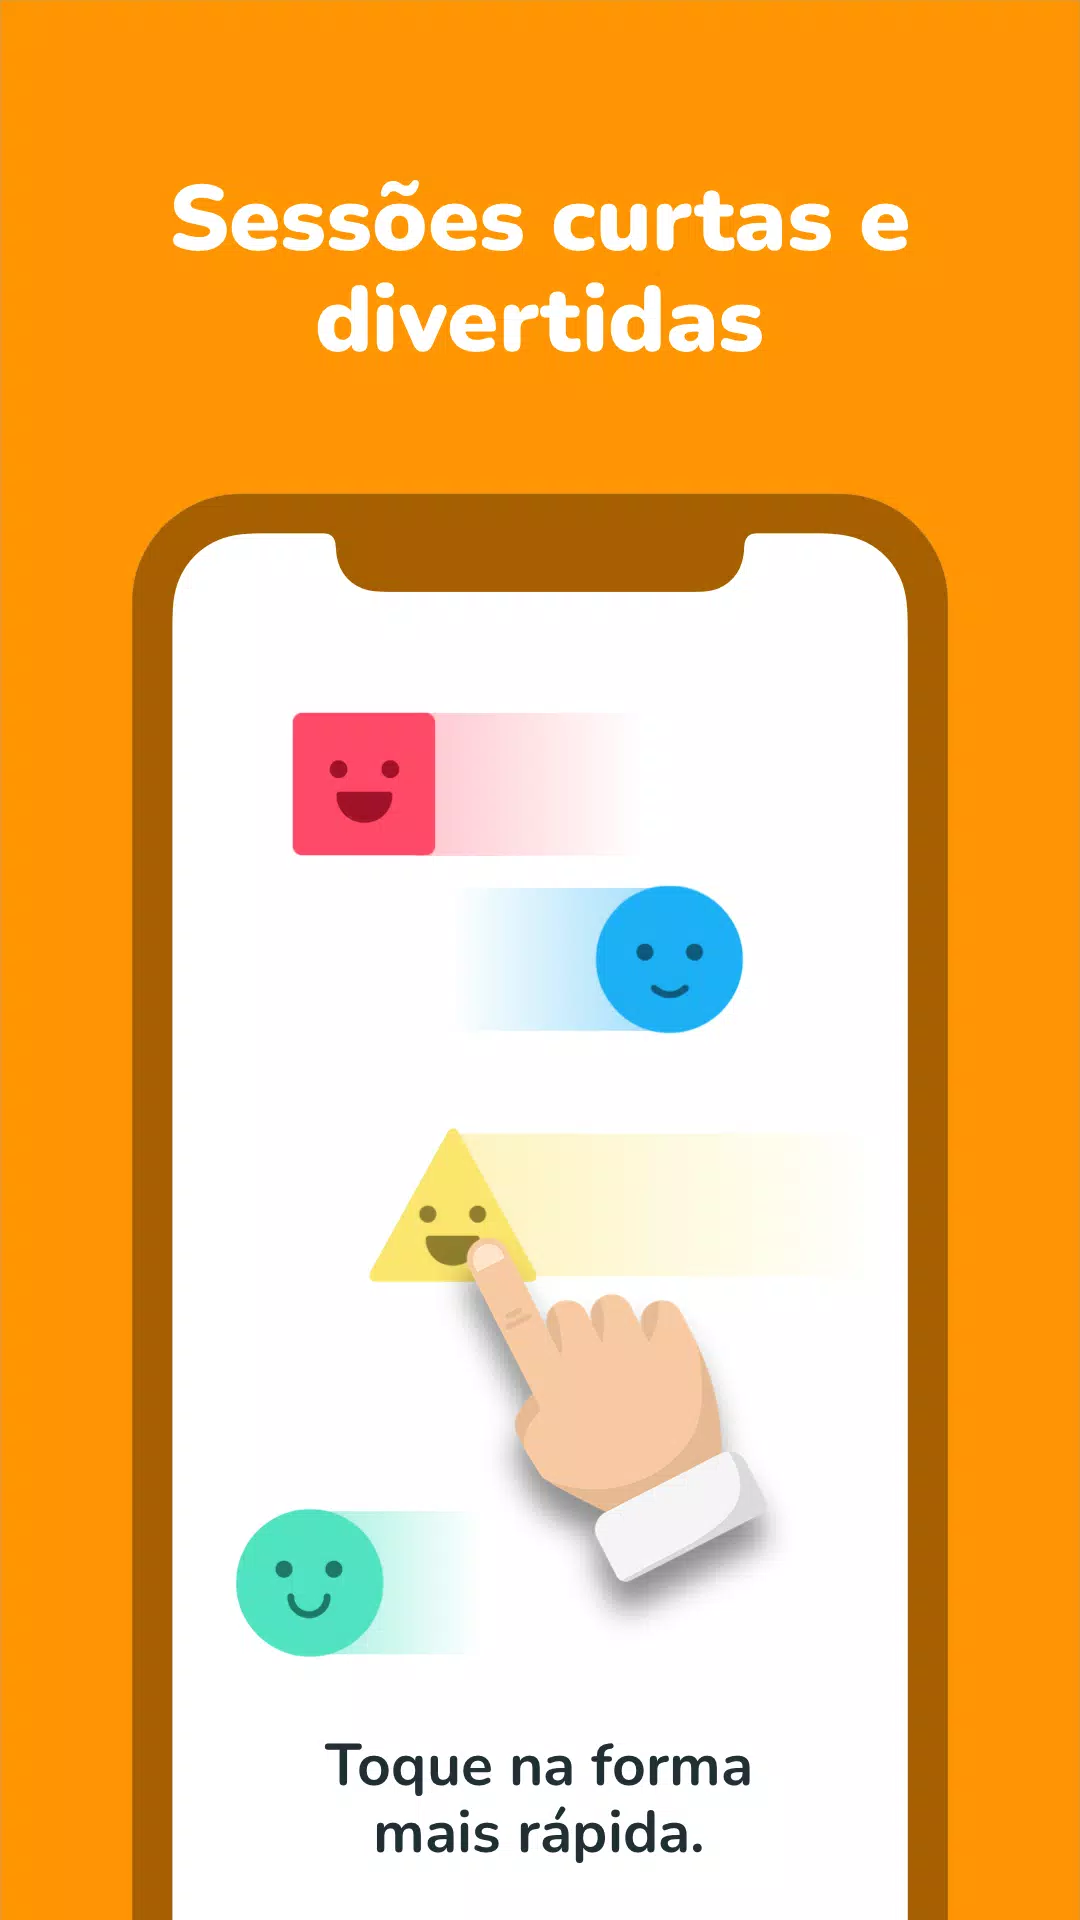 Neuróbicos: 60 Jogos mentais – Apps no Google Play